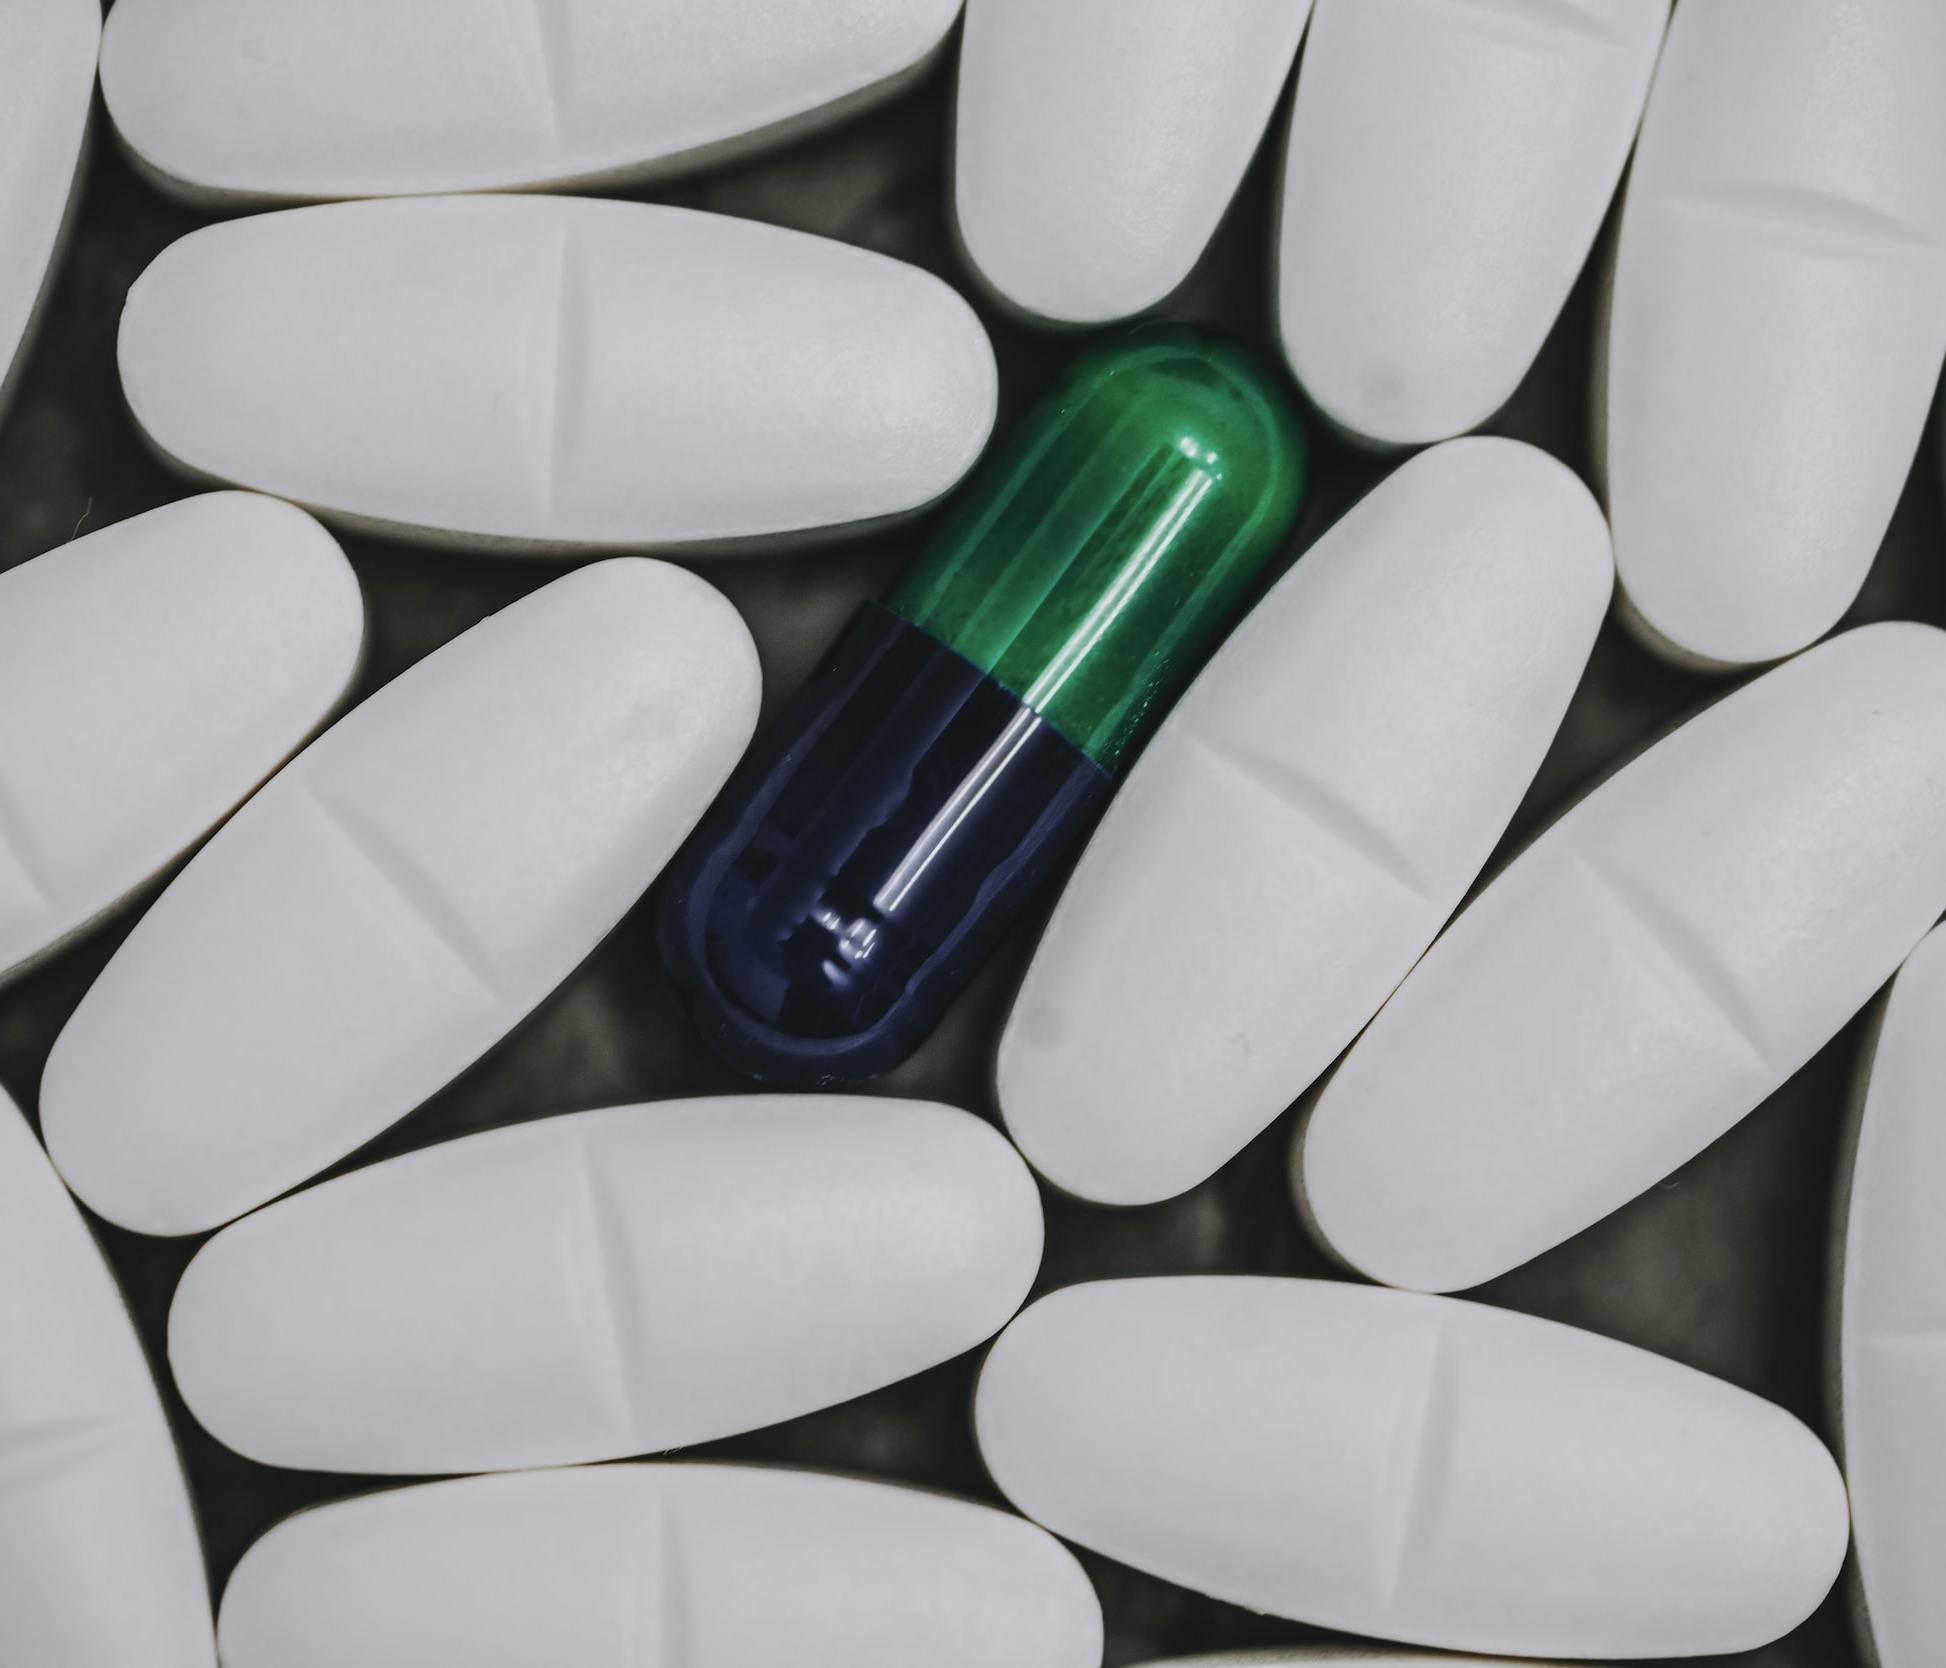 Pillole bianche circondano una pillola verde e nera